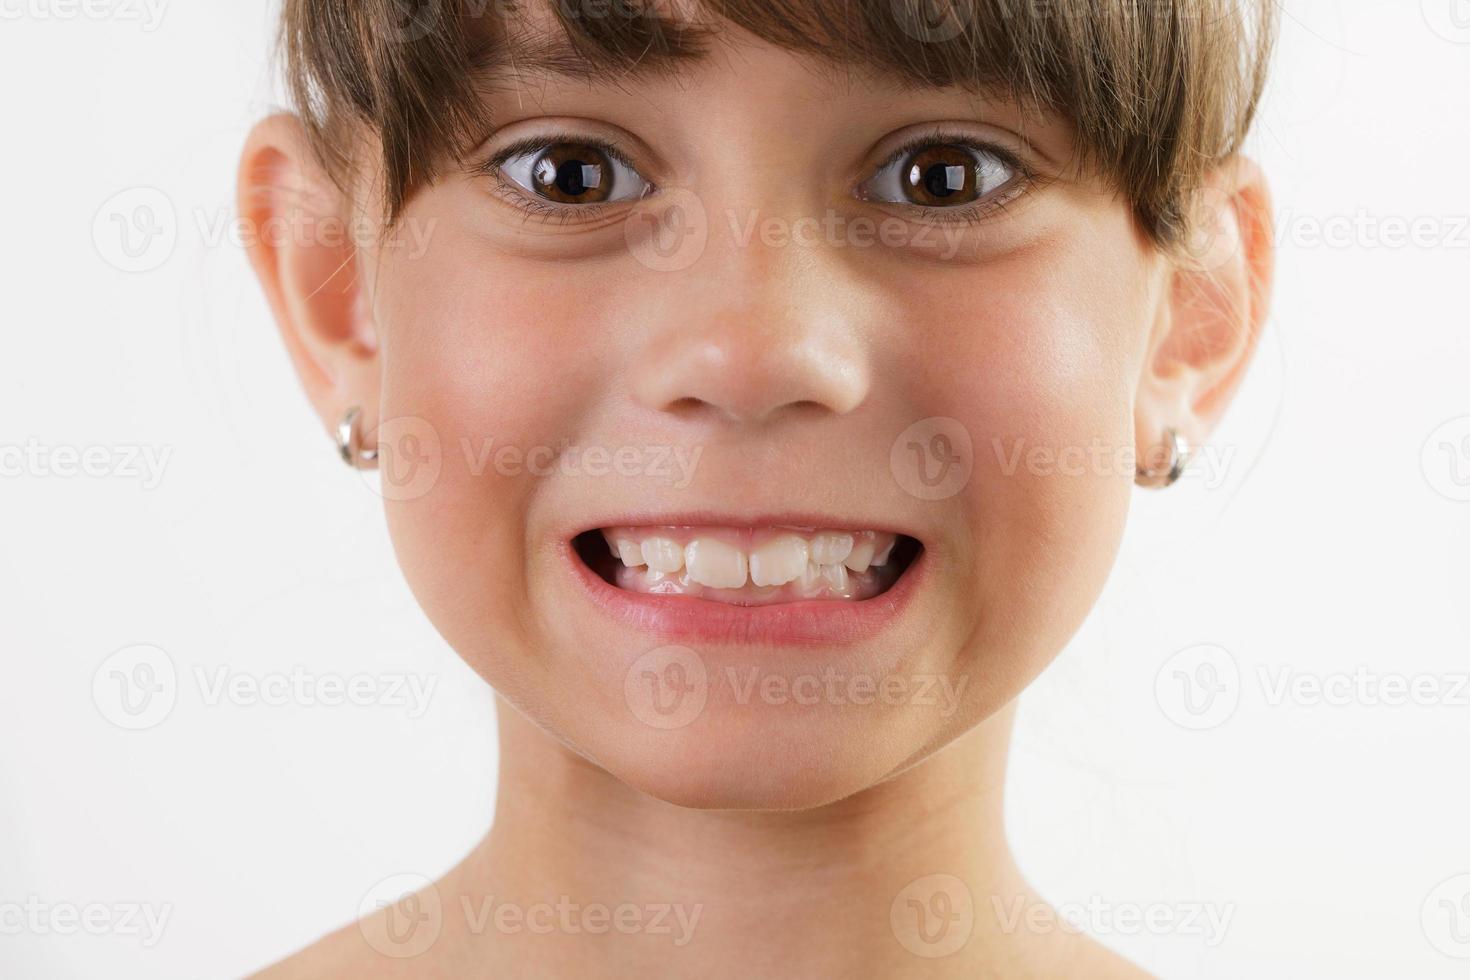 jolie petite fille joyeuse montre des dents photo